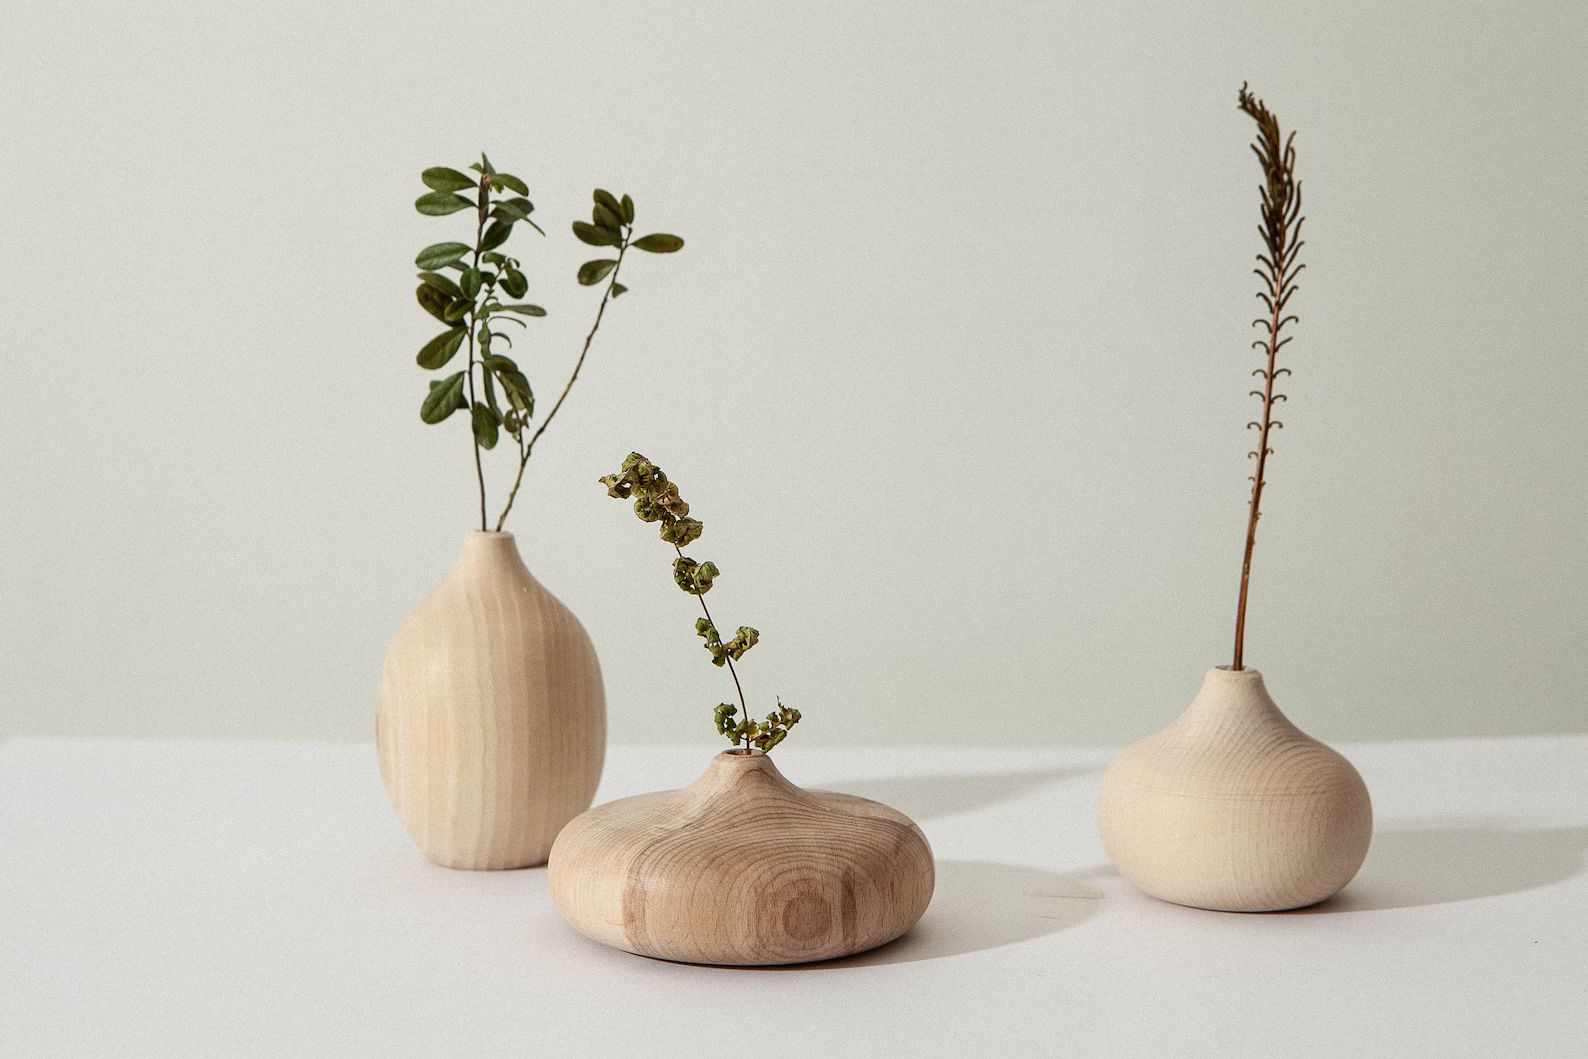 Set of 3 Wood Vase Home Decor Handmade Vase Birthday Gift, Gift for Her, Anniversary Gift, Weddin... | Etsy (US)